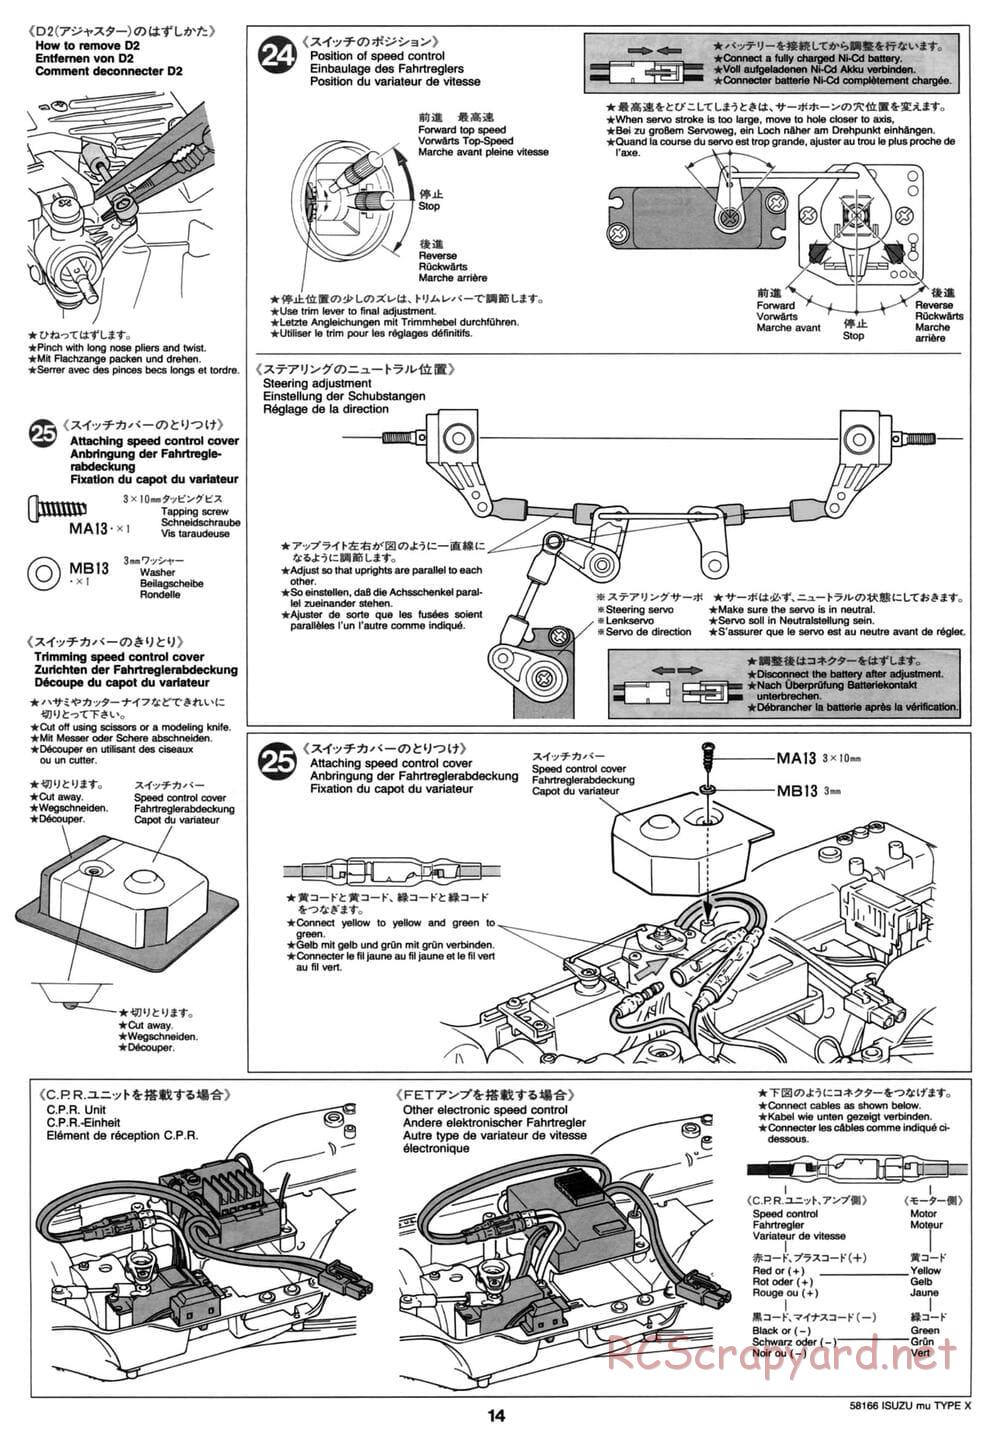 Tamiya - Isuzu Mu Type X - CC-01 Chassis - Manual - Page 14